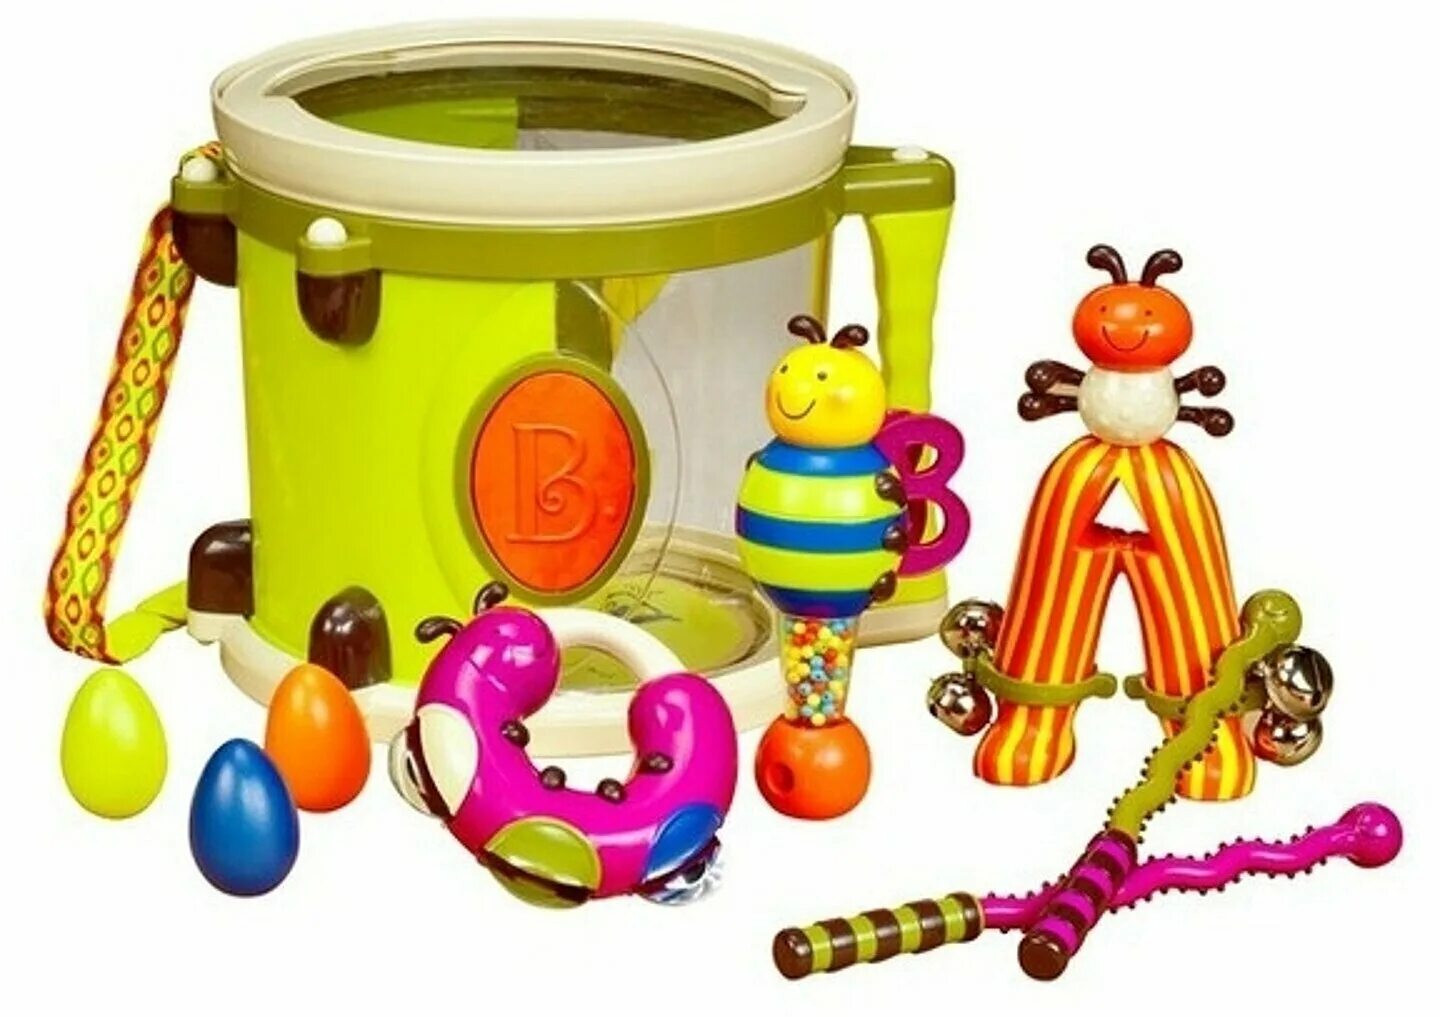 Музыкальный инструмент "барабан" 2с469. Барабан Battat. Набор музыкальных инструментов для детей. Battat музыкальные инструменты.